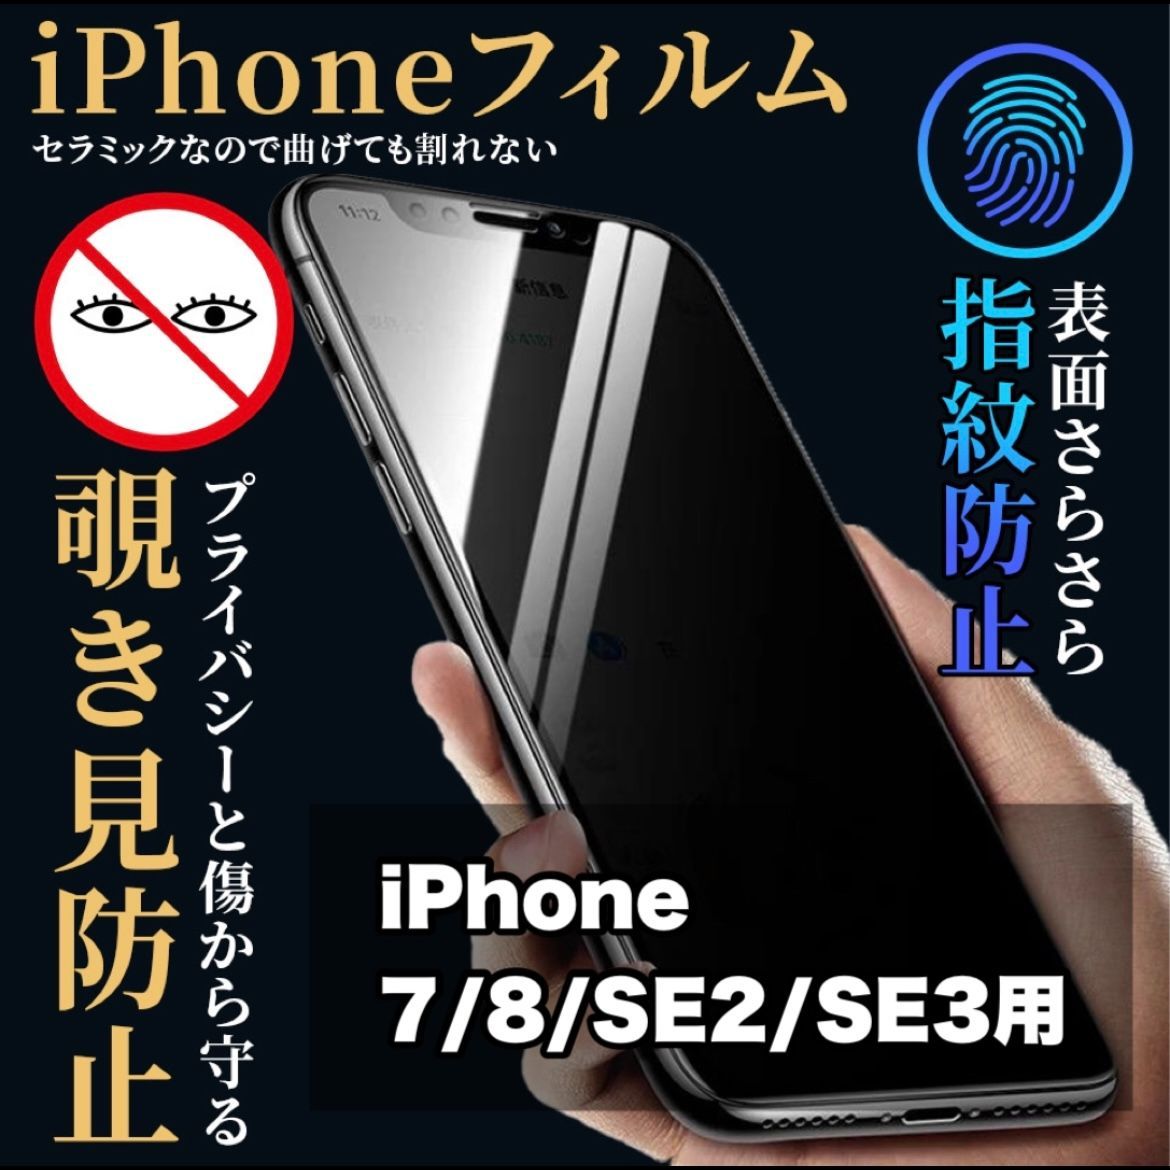 【色: キャメル】iphone7 iphone8 iphonese2 第2世代